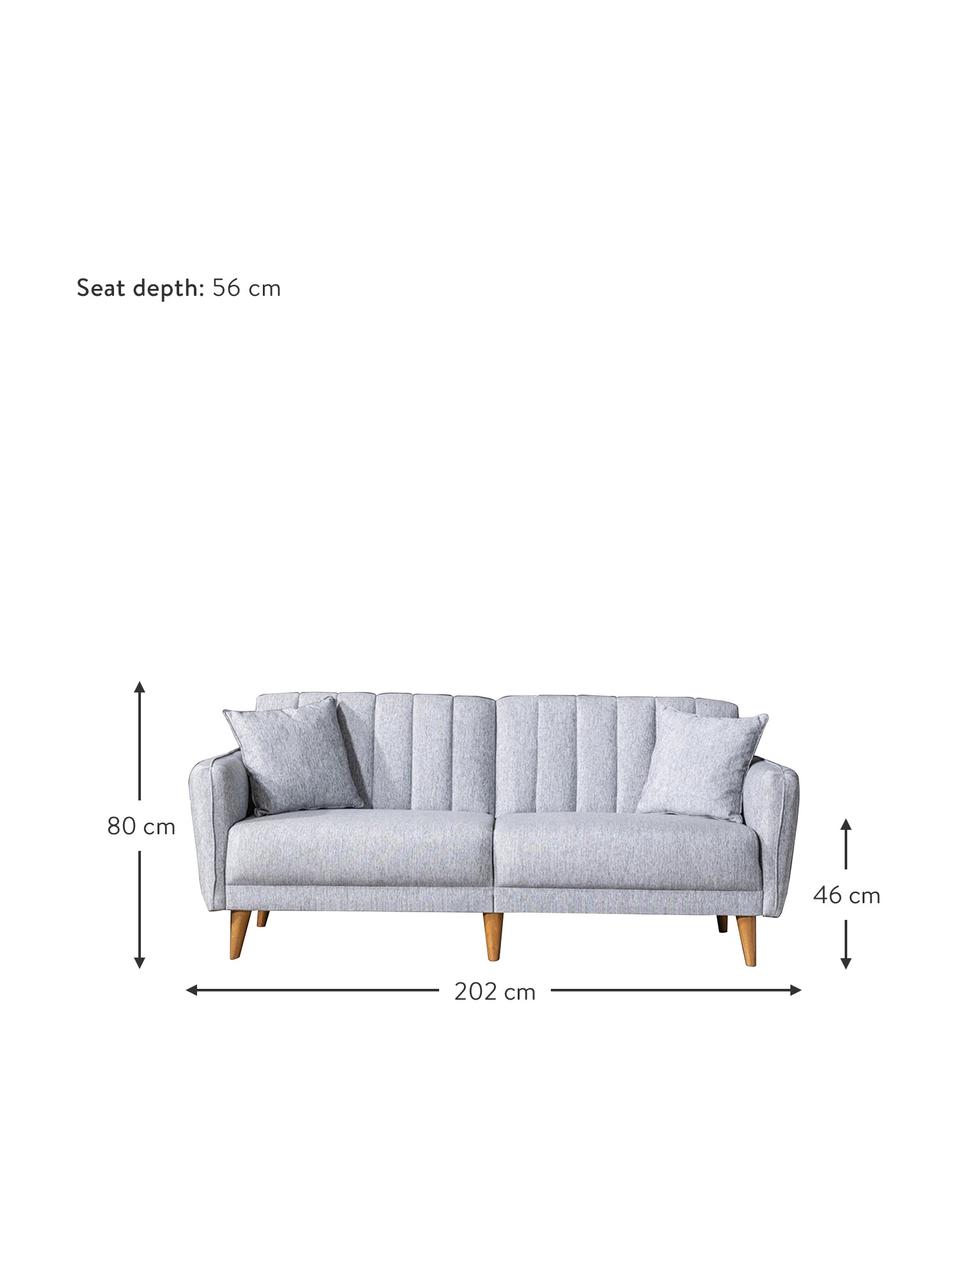 Sofa rozkładana Aqua (3-osobowa), Tapicerka: len, Stelaż: drewno rogowe, metal, Nogi: drewno naturalne, Jasny szary, S 202 x G 85 cm